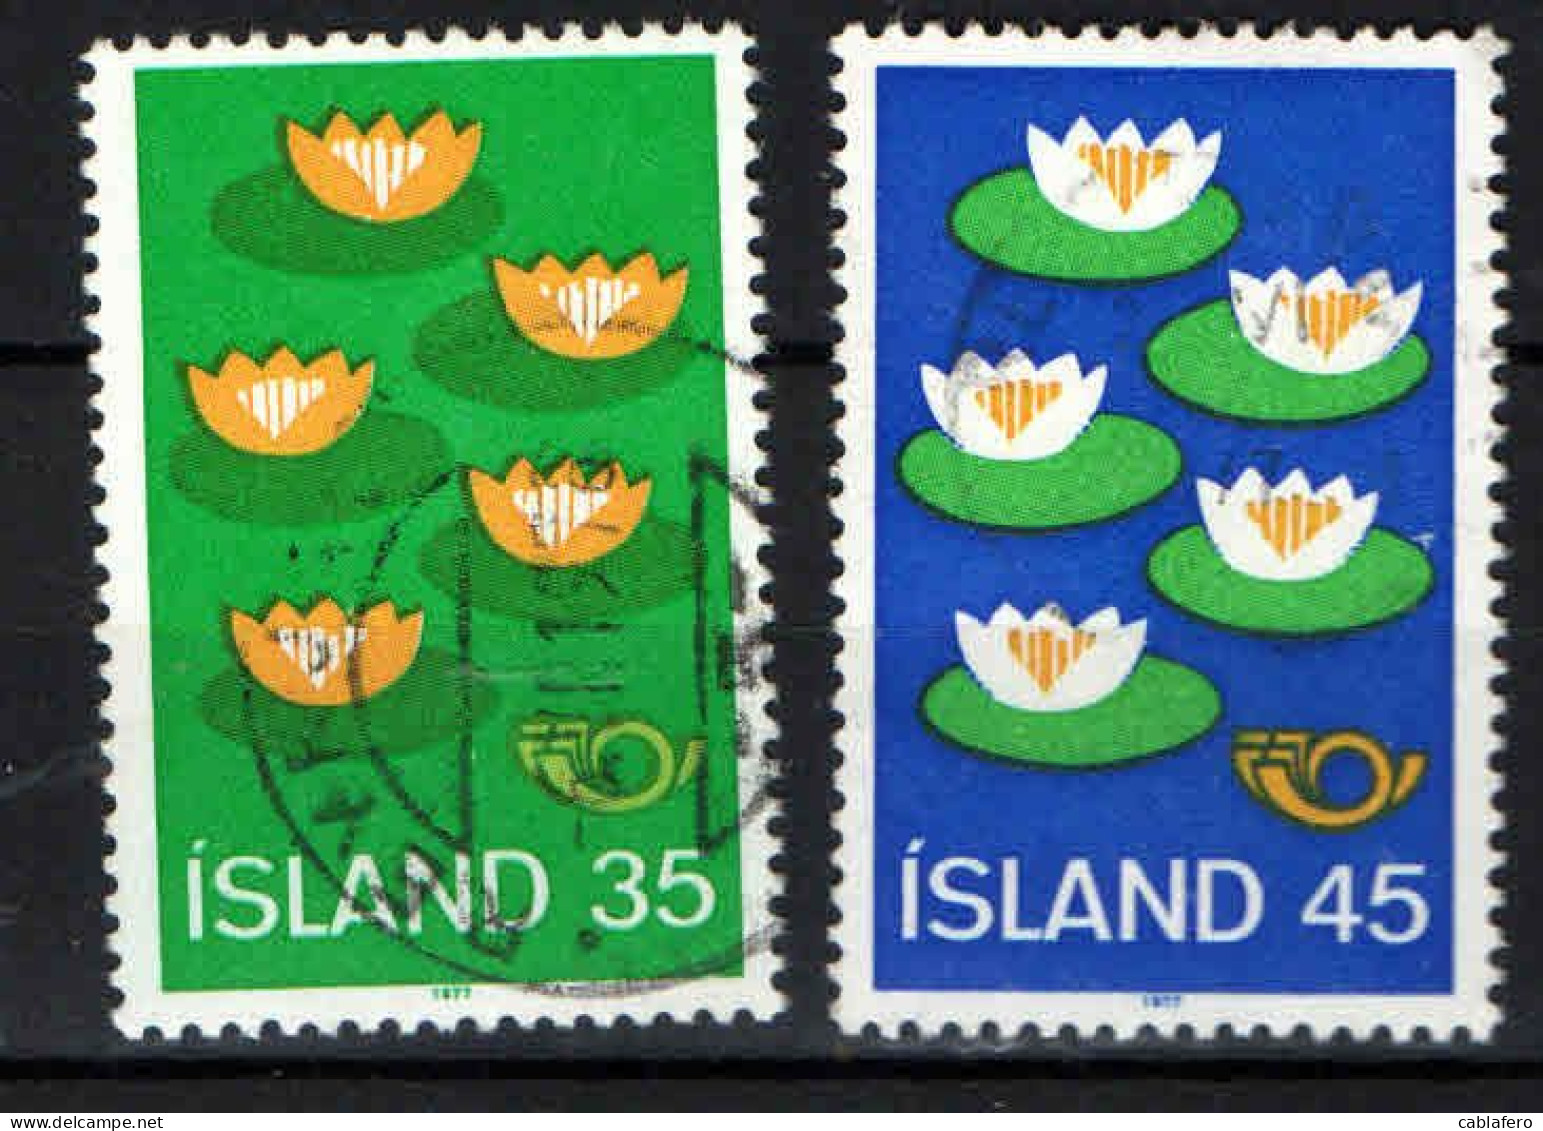 ISLANDA - 1977 - "NORDEN '77" - 25^ SESSIONE DEL CONSIGLIO NORDICO A HELSINKI - USATI - Used Stamps